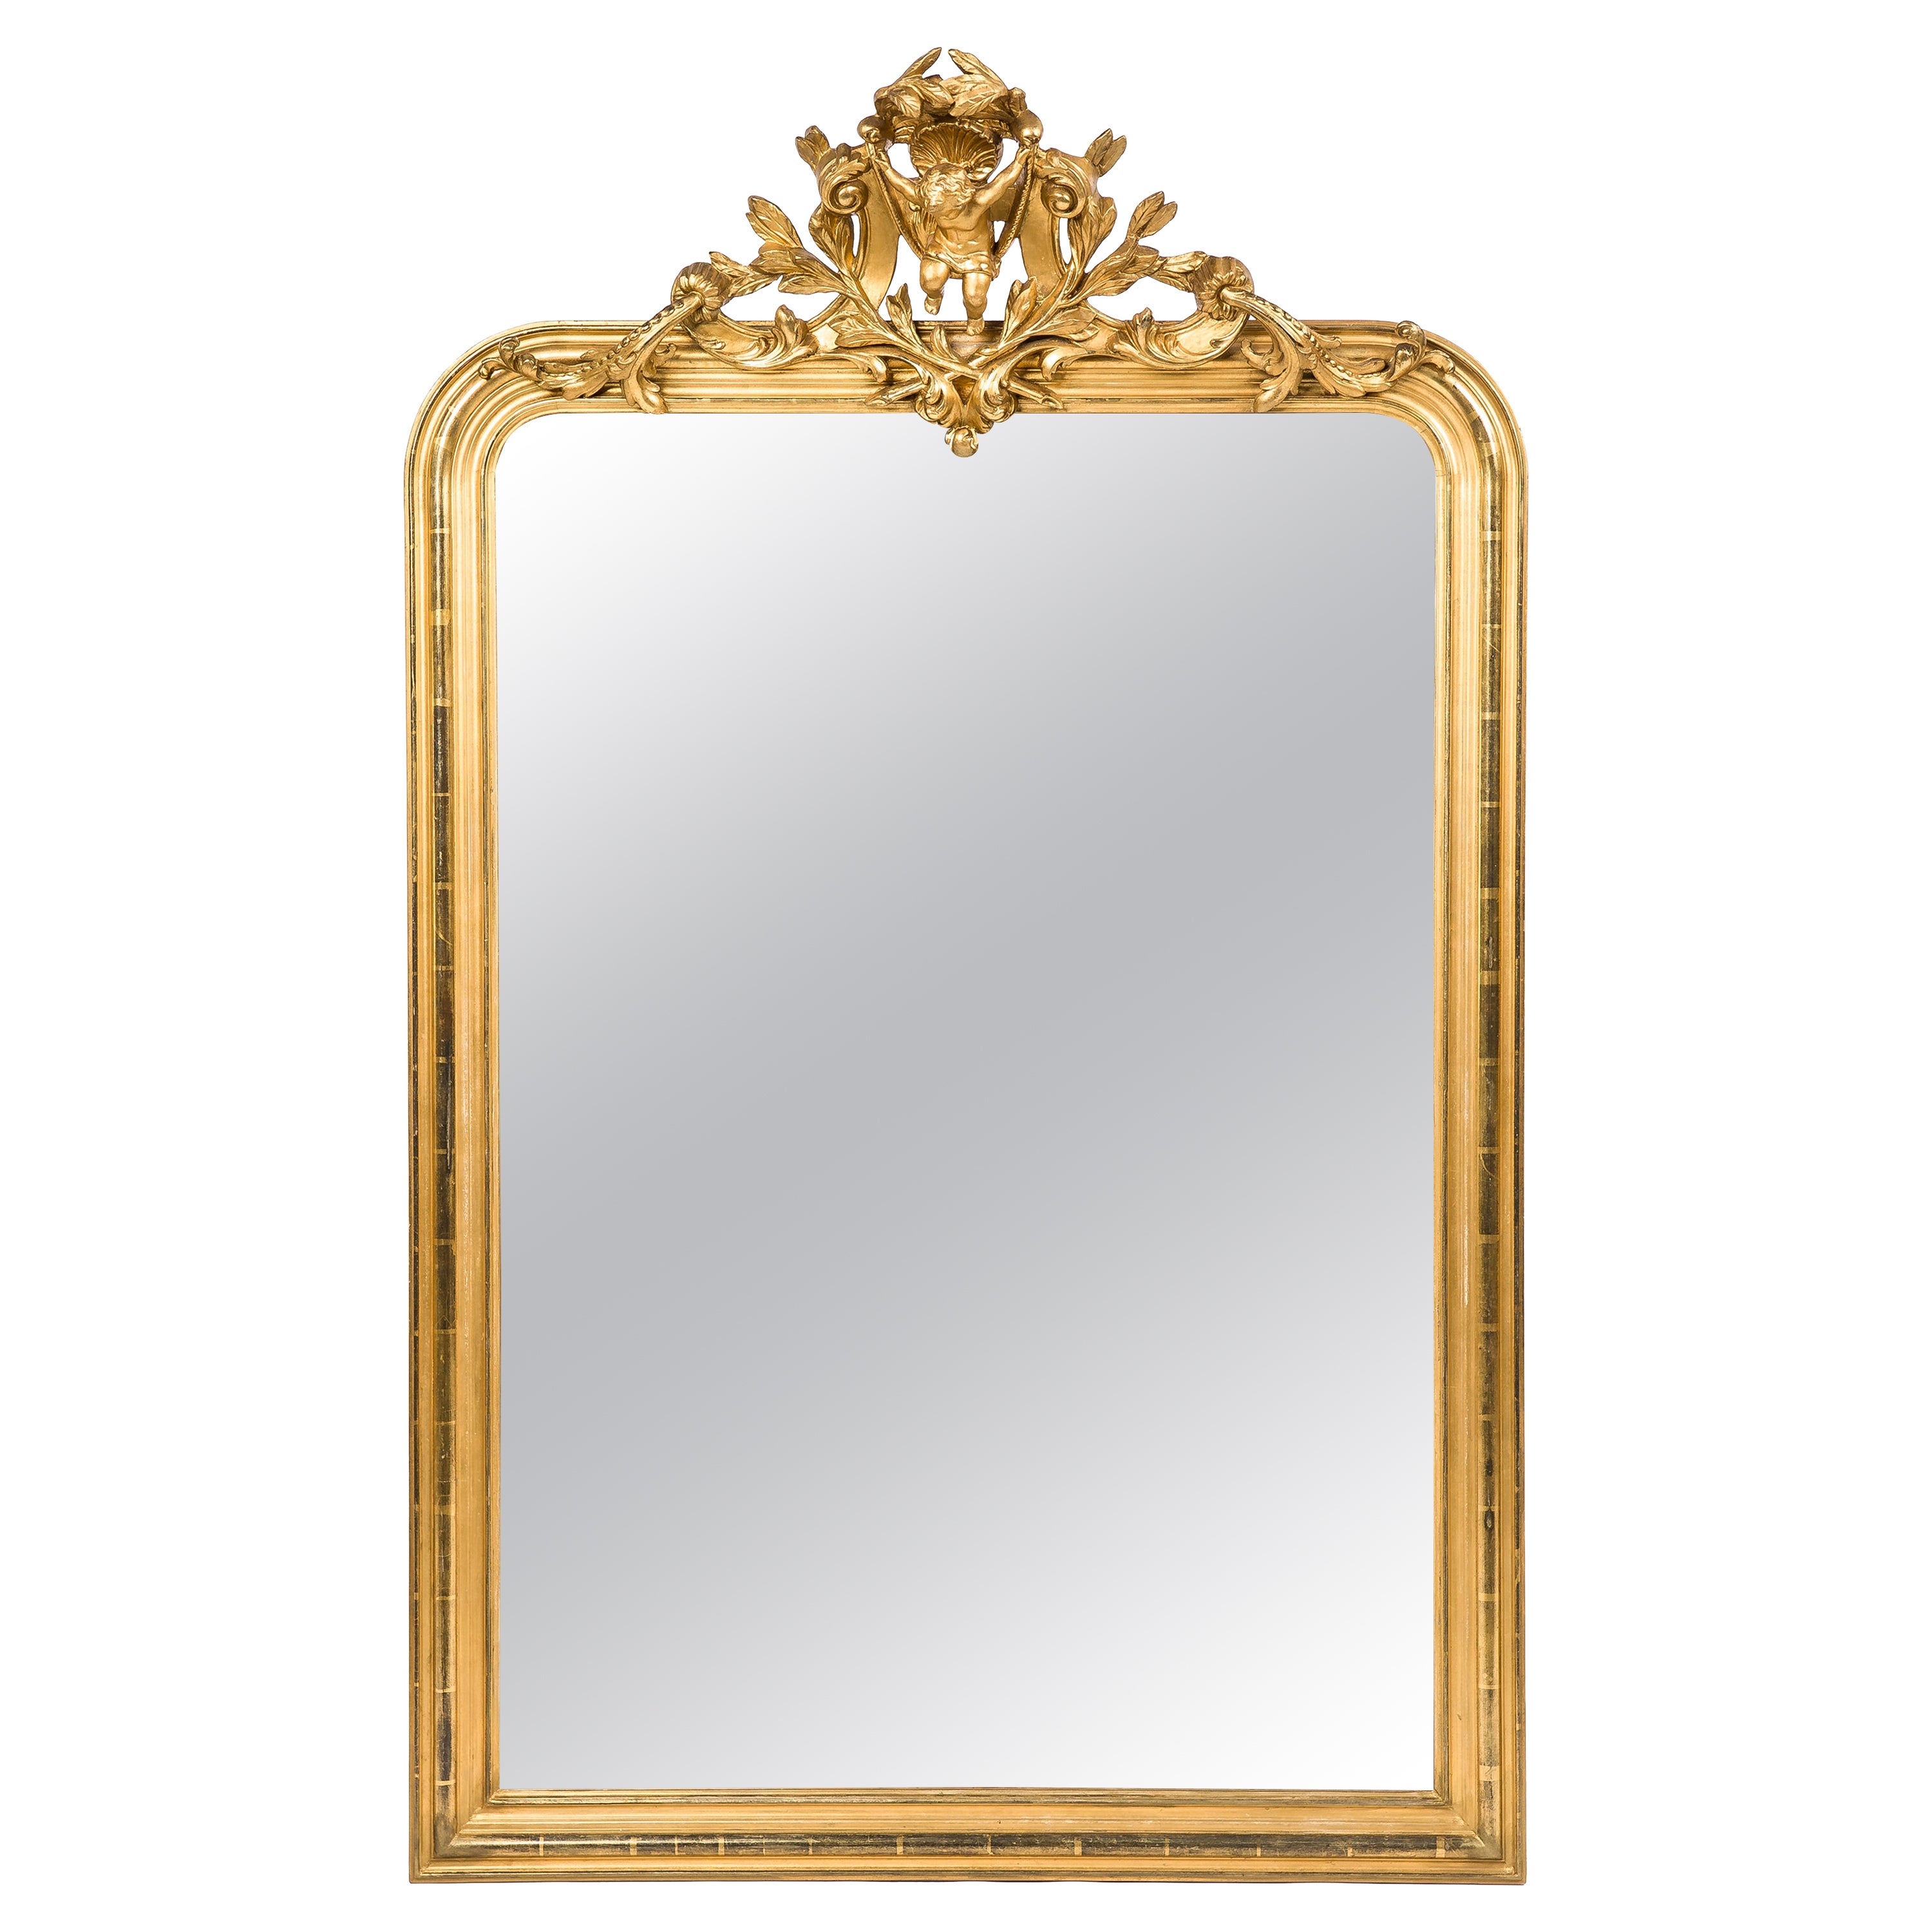 Antique miroir français Louis Philippe doré à la feuille d'or avec putti daté de 1879